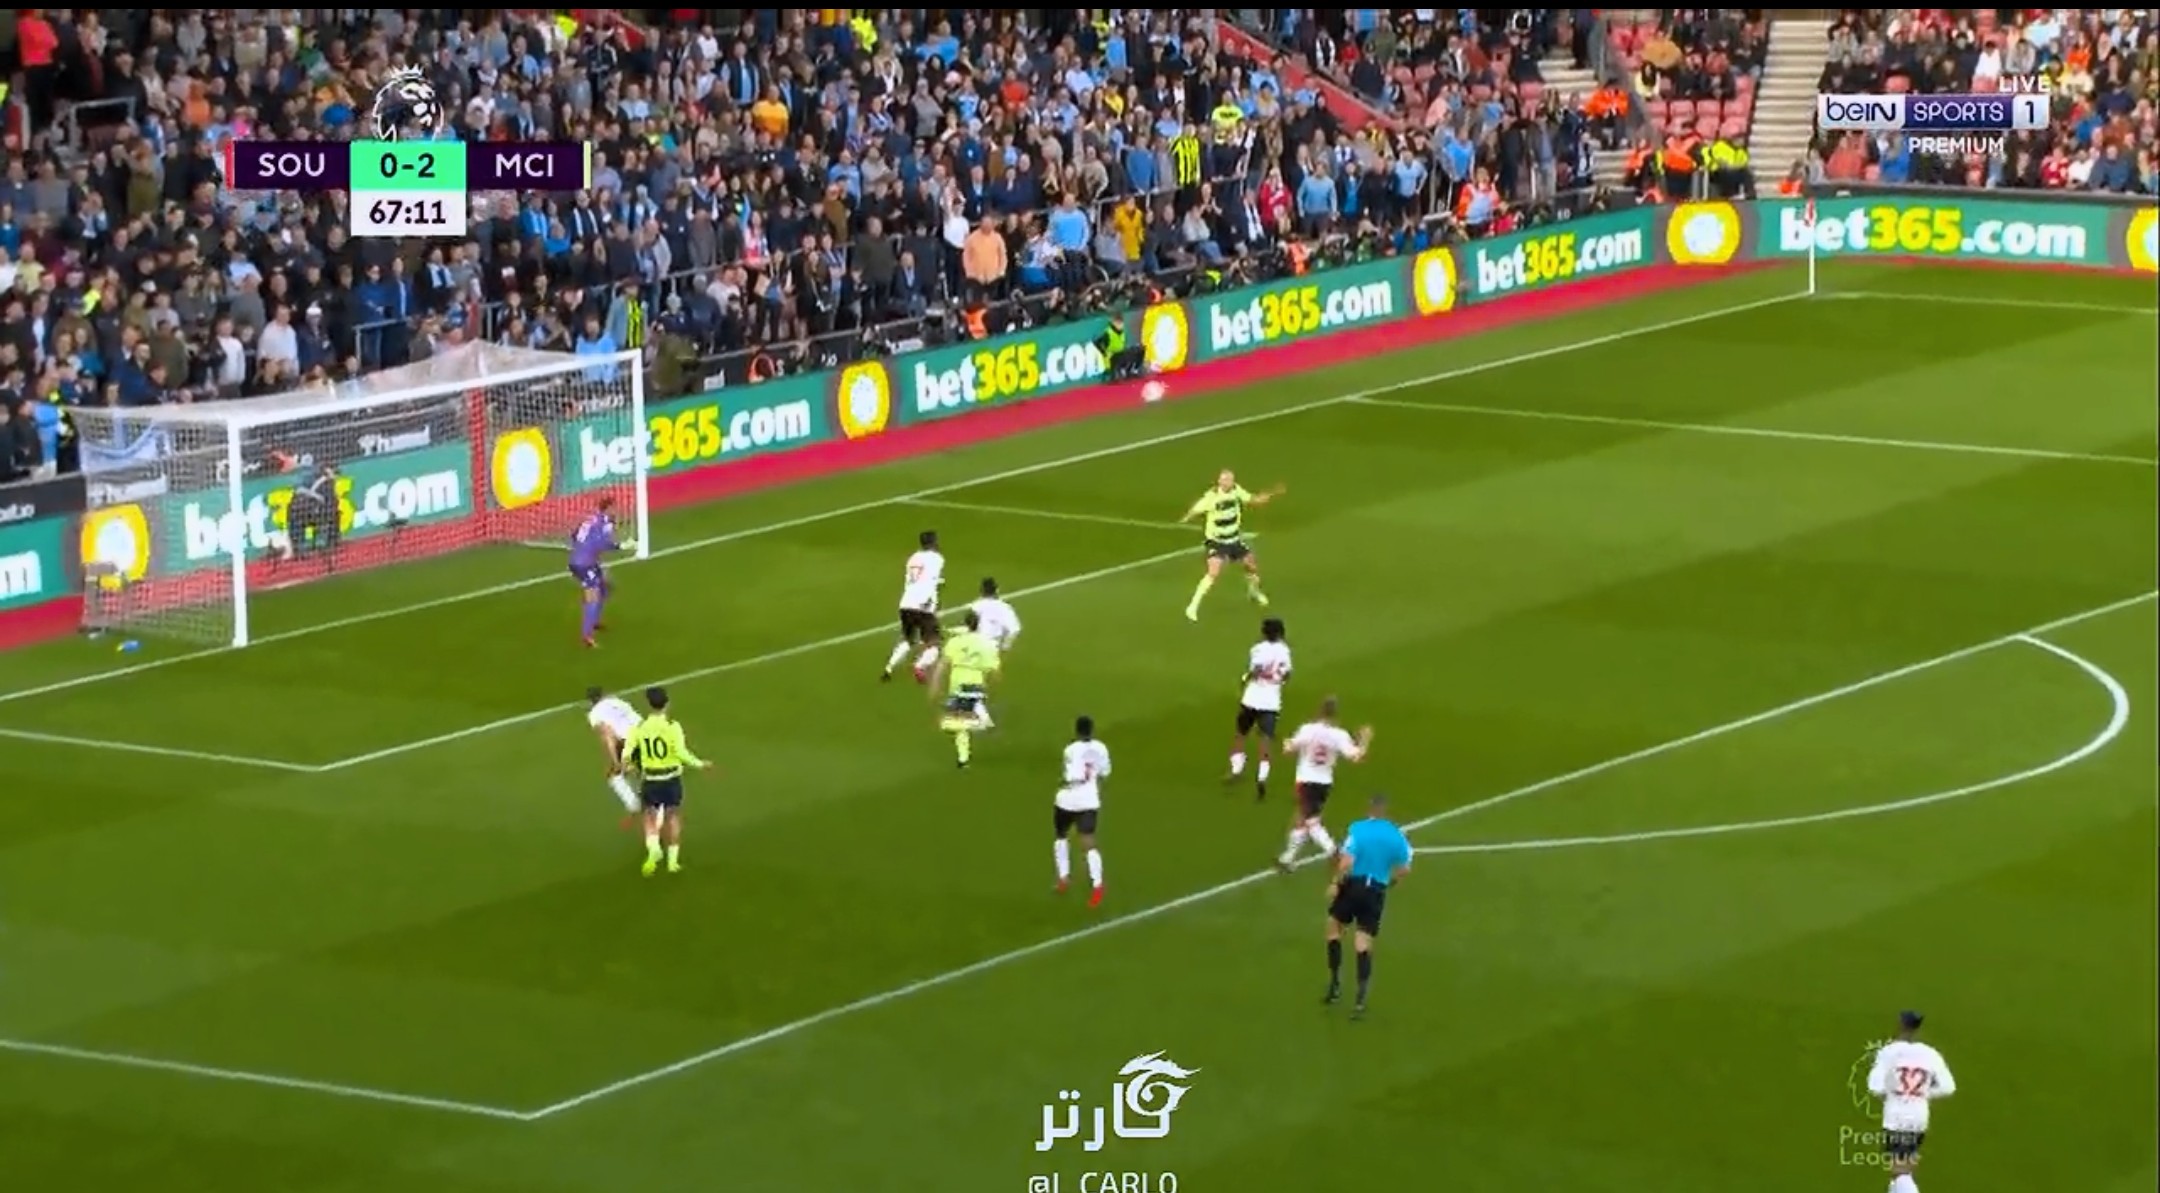 Erling Haaland elképesztő gólt rúgott a Southampton ellen – VIDEÓ